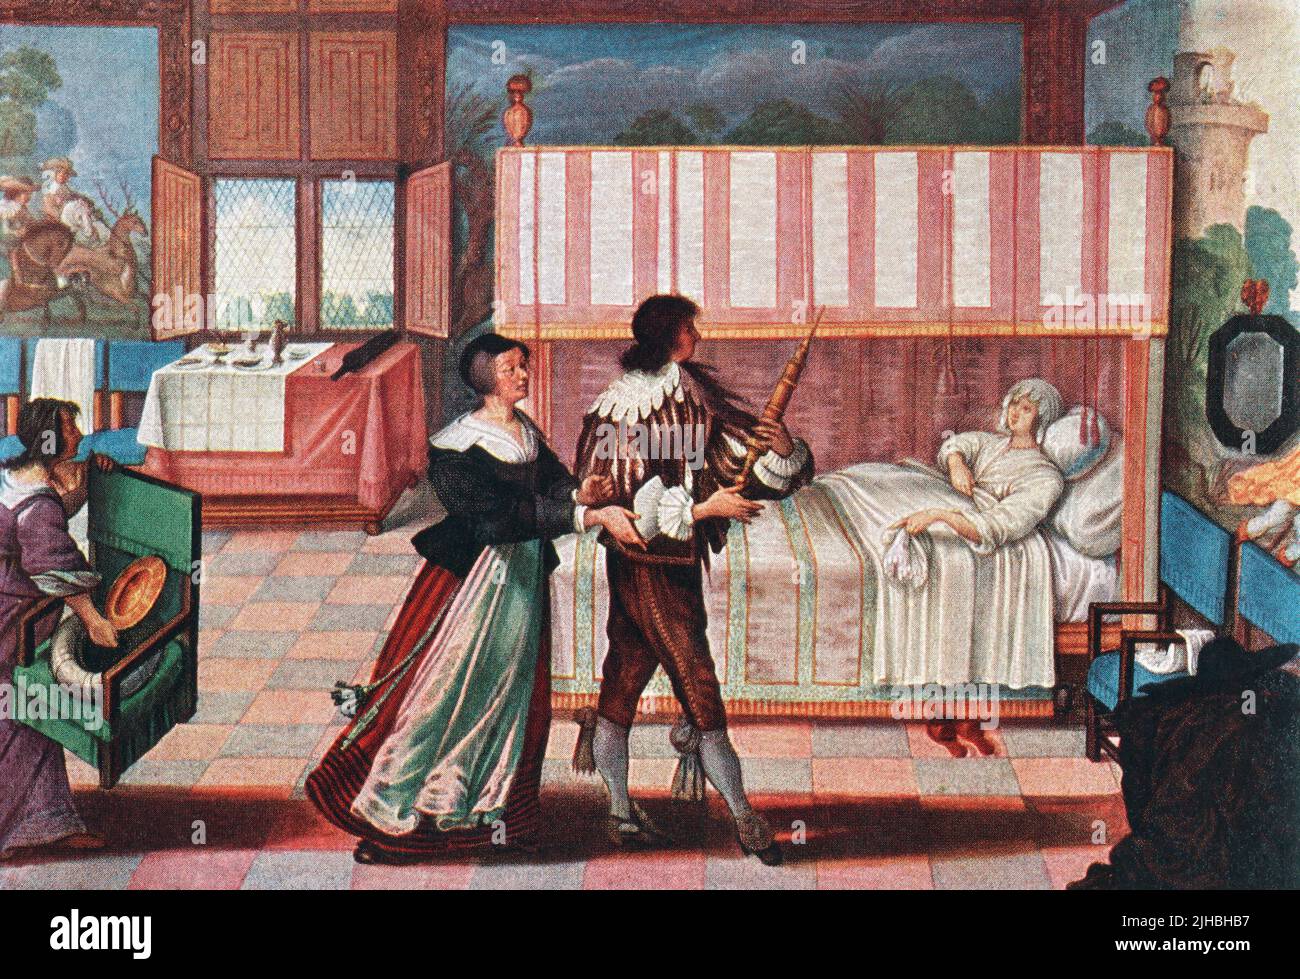 Der Apotheker bereitet sich darauf vor, einem kranken Patienten nach einer Arbeit von Abraham Bosse aus dem 17.. Jahrhundert einen Einlauf zu verabreichen. Aus Modes and Manners, veröffentlicht 1935. Stockfoto